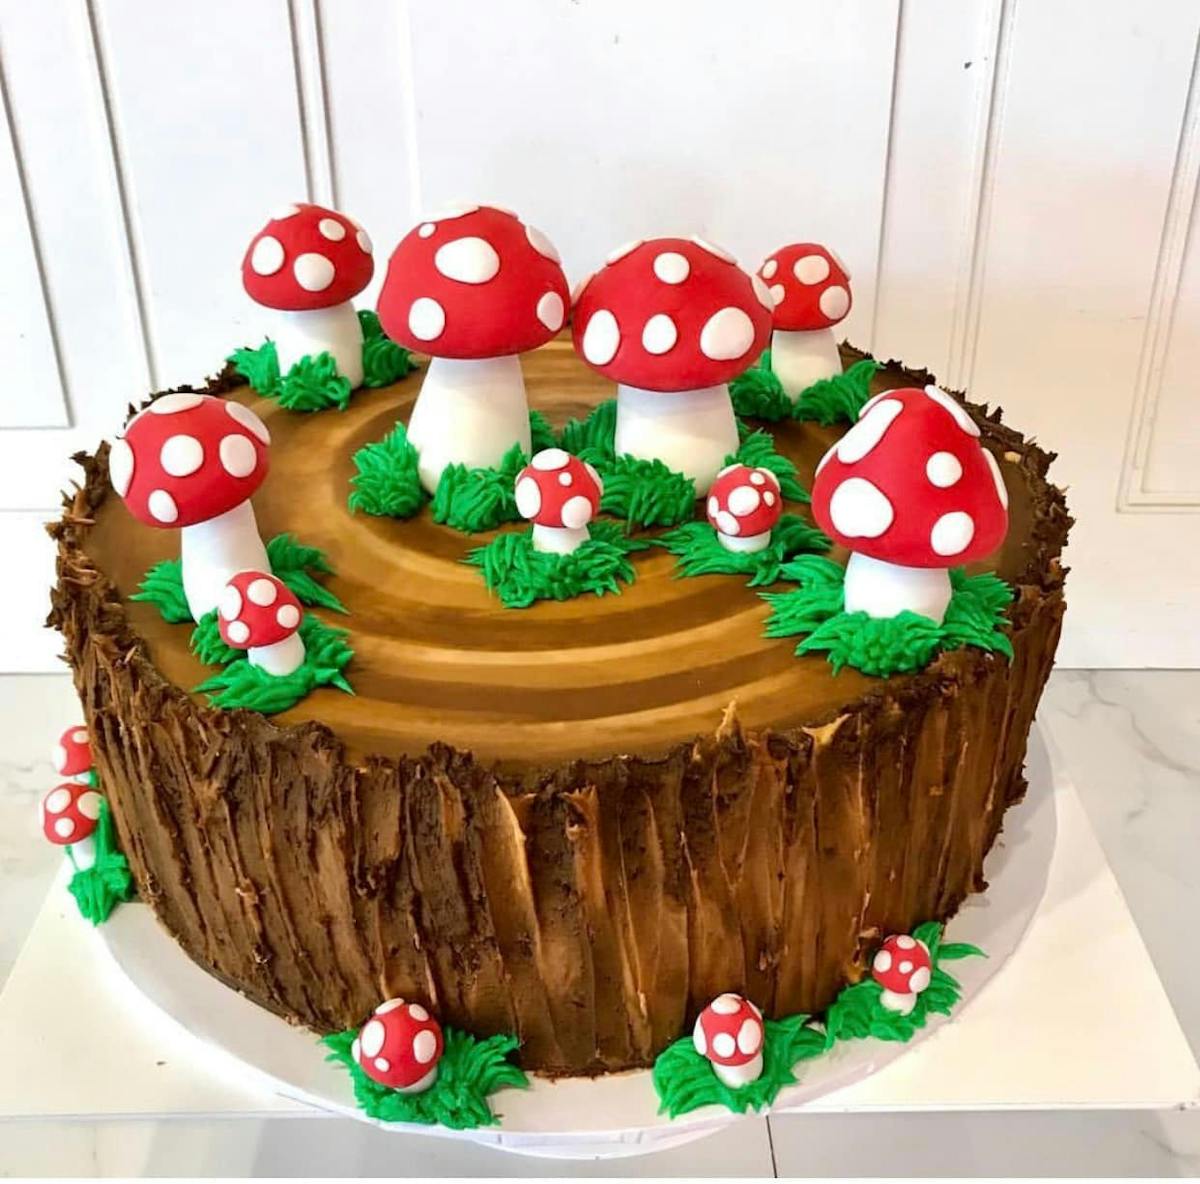 a cake made to look like a train